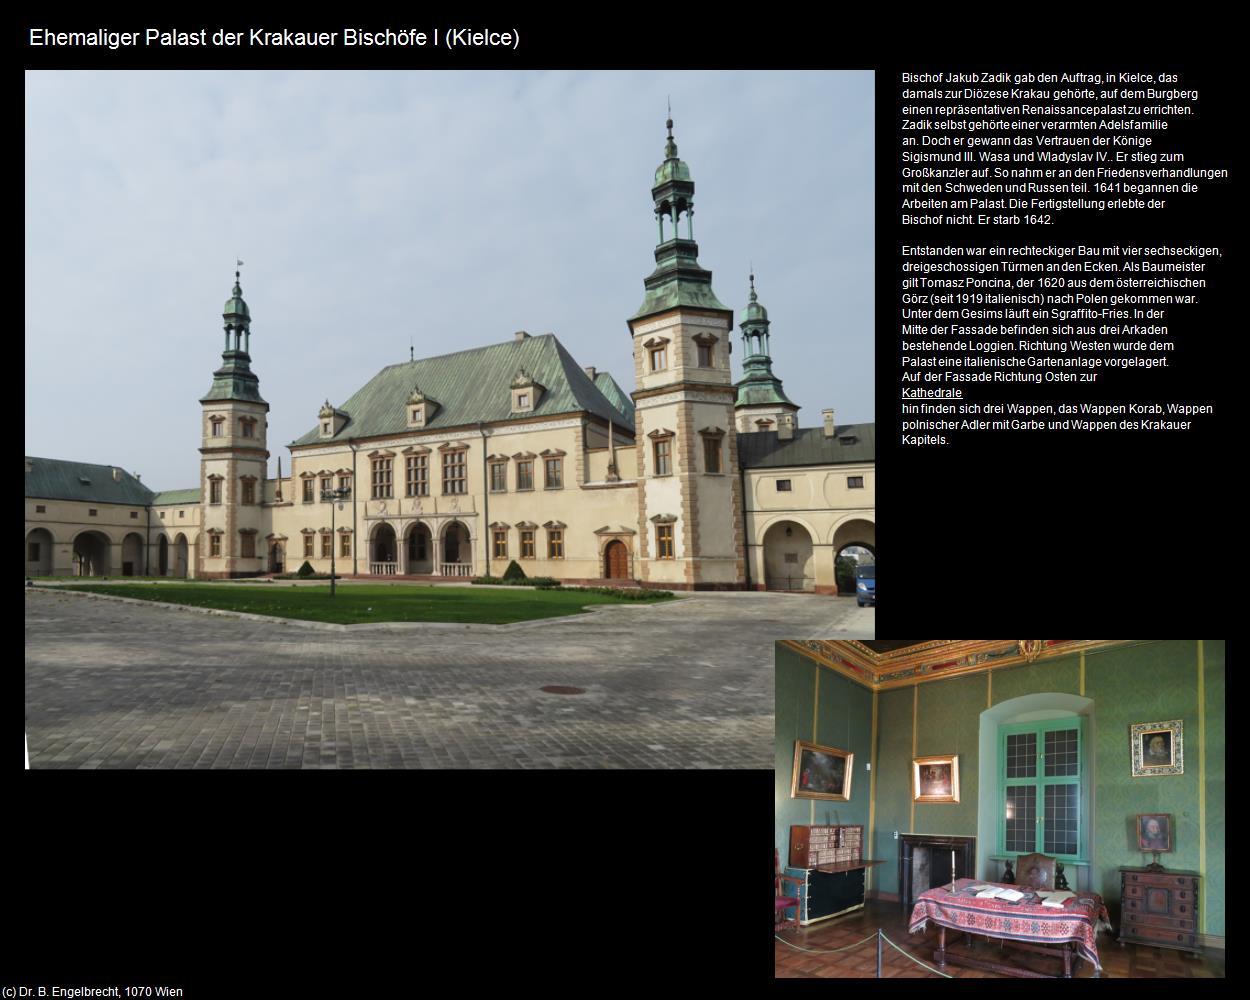 Ehem. Palast der Krakauer Bischöfe I (Kielce) in POLEN-Galizien(c)B.Engelbrecht